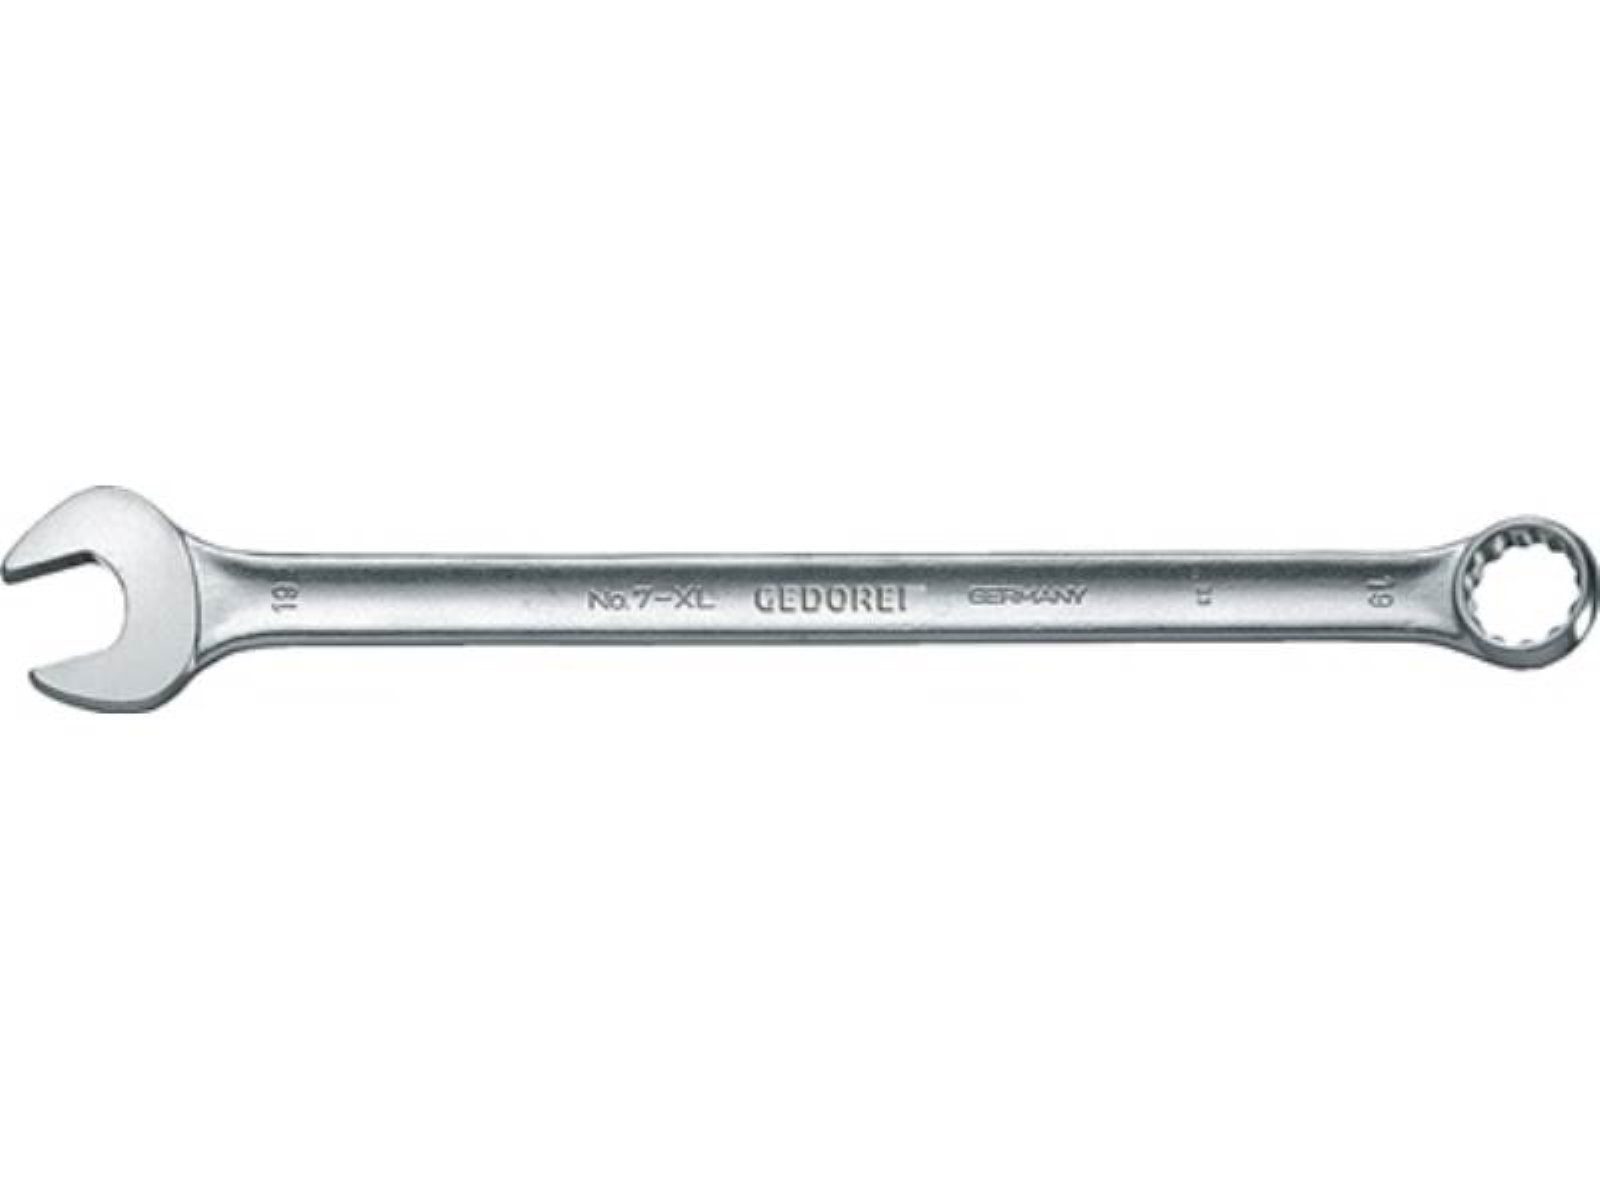 Gedore Maulschlüssel Ringmaulschlüssel 7 XL SW 22mm L.350mm Form A ext.lang CV-Stahl GEDOR | Maulschlüssel